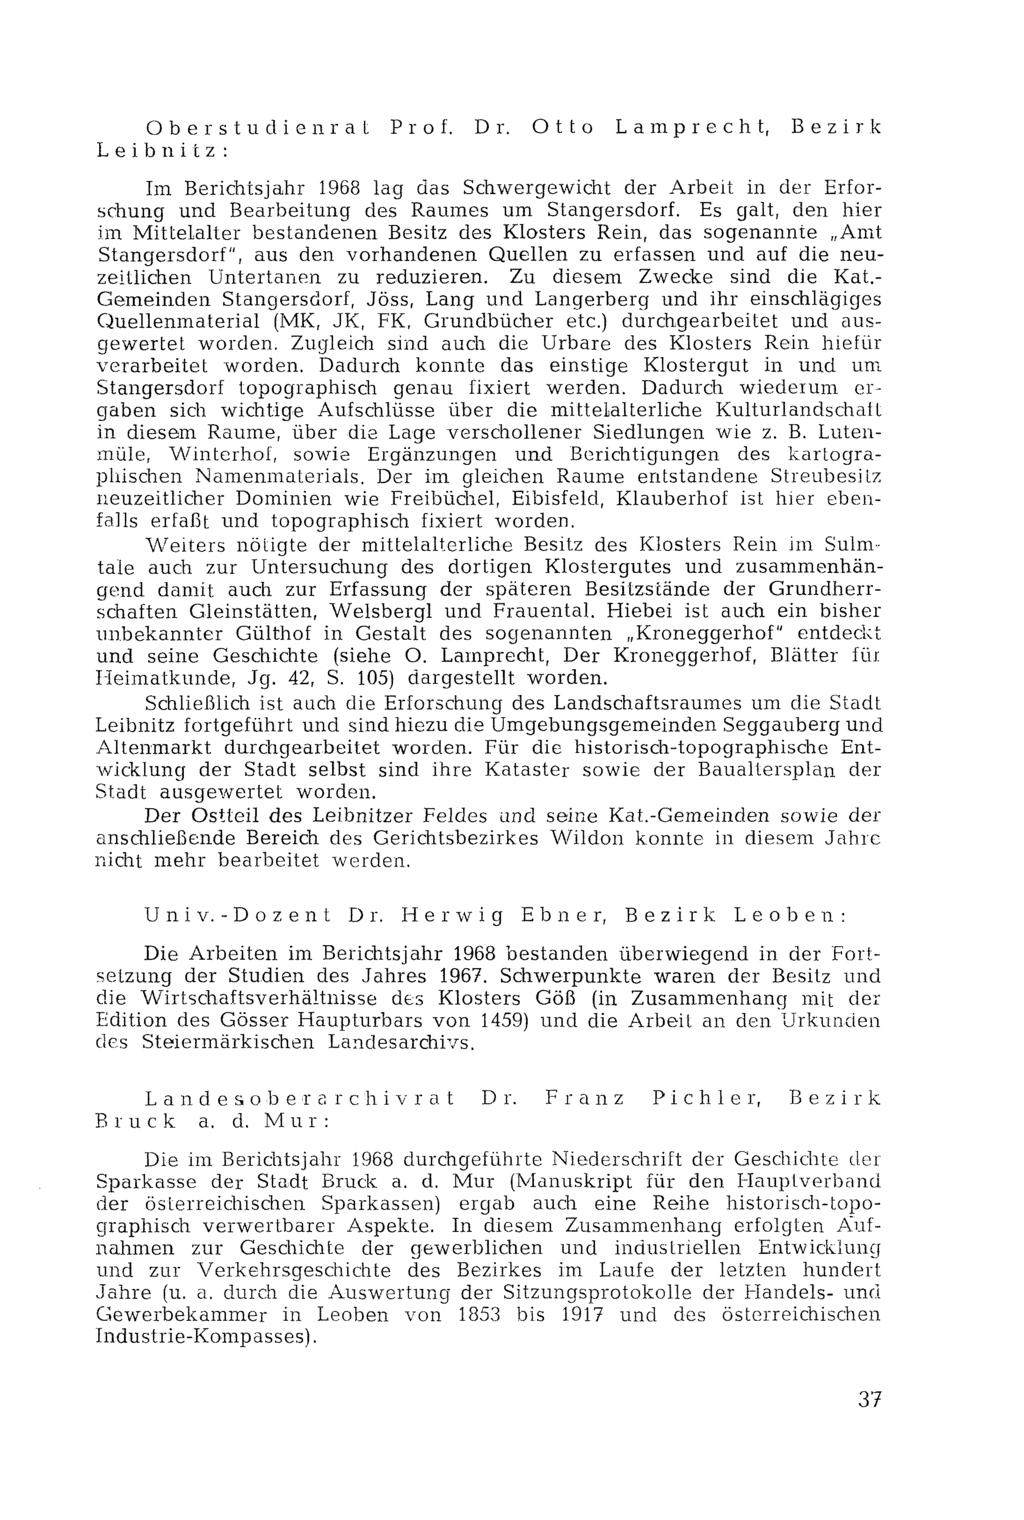 Ober Studien rat Prof. Dr. Otto Lamprecht, Bezirk Leibnitz : Im Berichtsjahr 1968 lag das Schwergewicht der Arbeit in der Erforschung und Bearbeitung des Raumes um Stangersdorf.